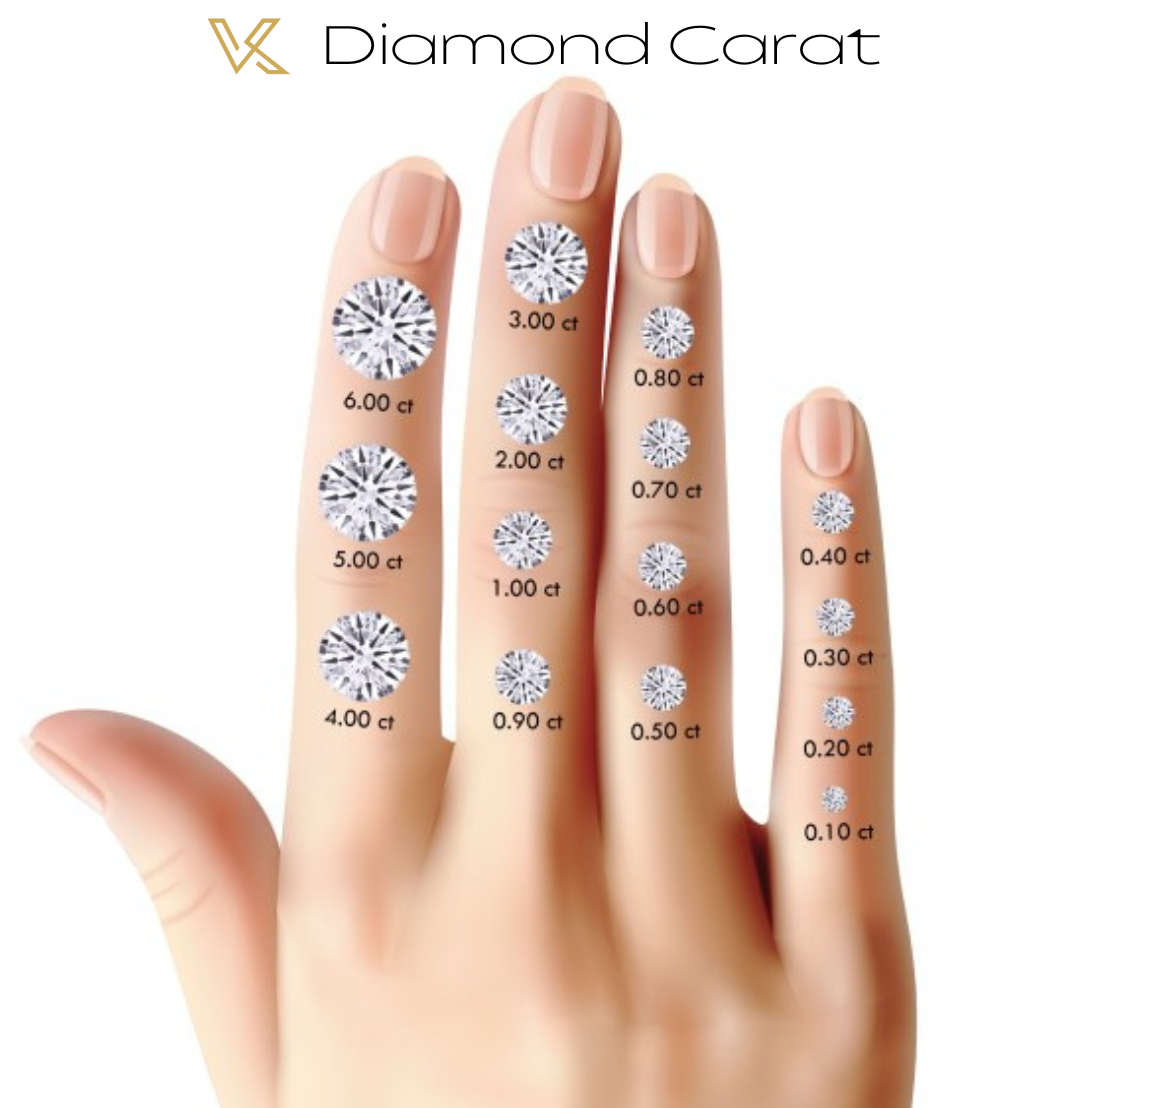 Kaufen Sie losen Diamanten 0,55 Karat. Strahlender Schnitt. D VS1 – IGI-zertifiziert